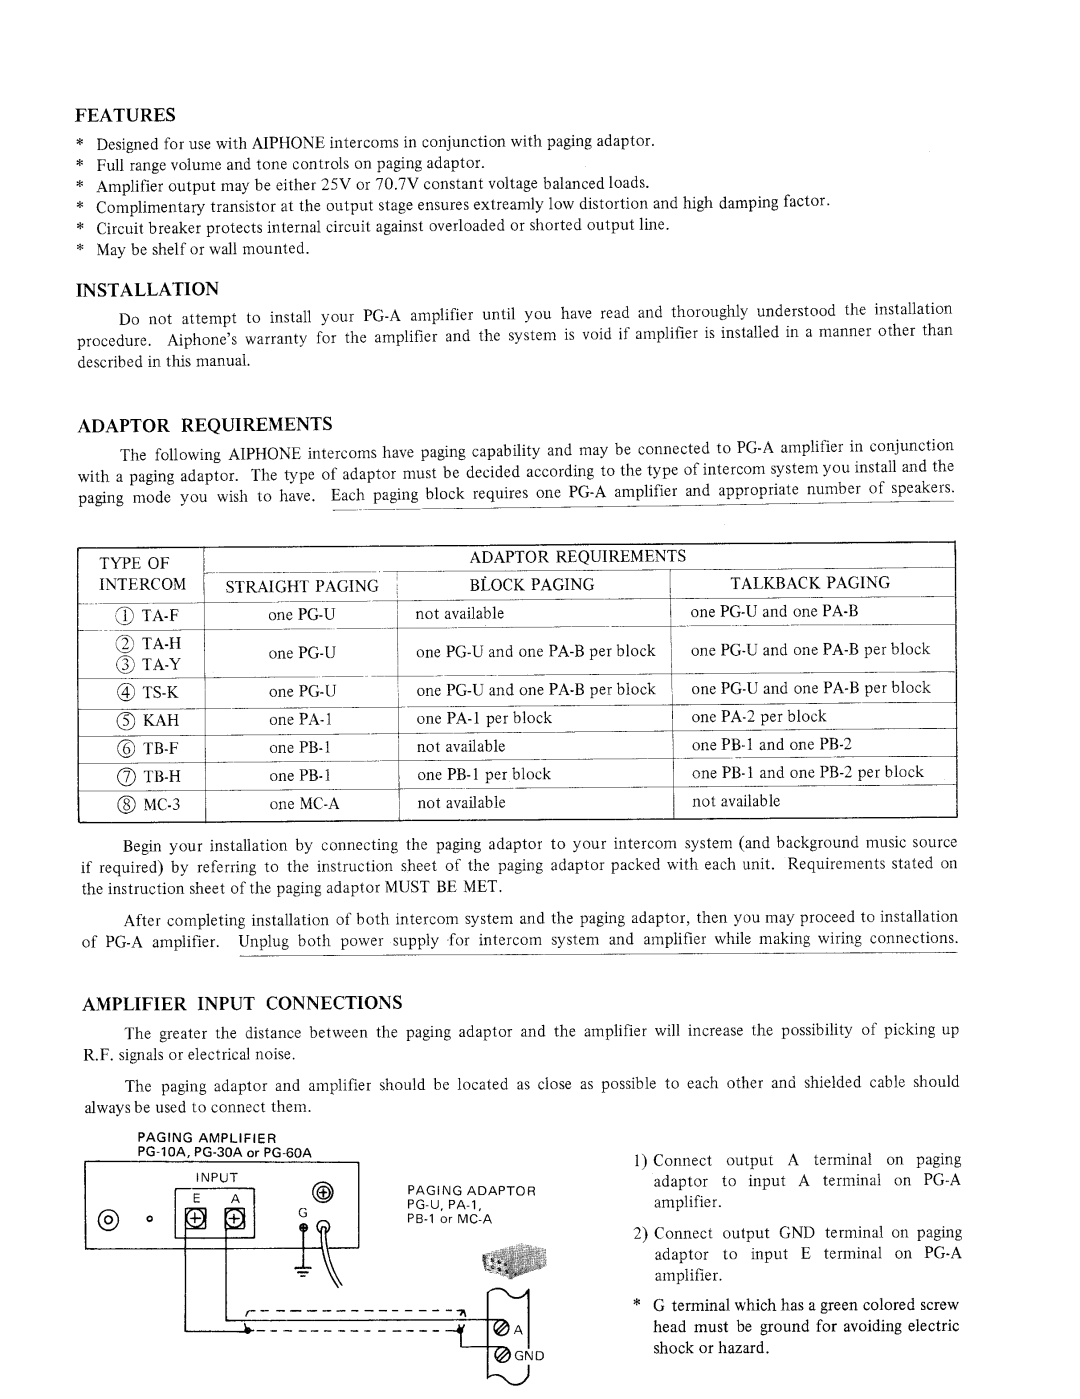 Aiphone PG-60A, PG-10A, PG-30A manual 